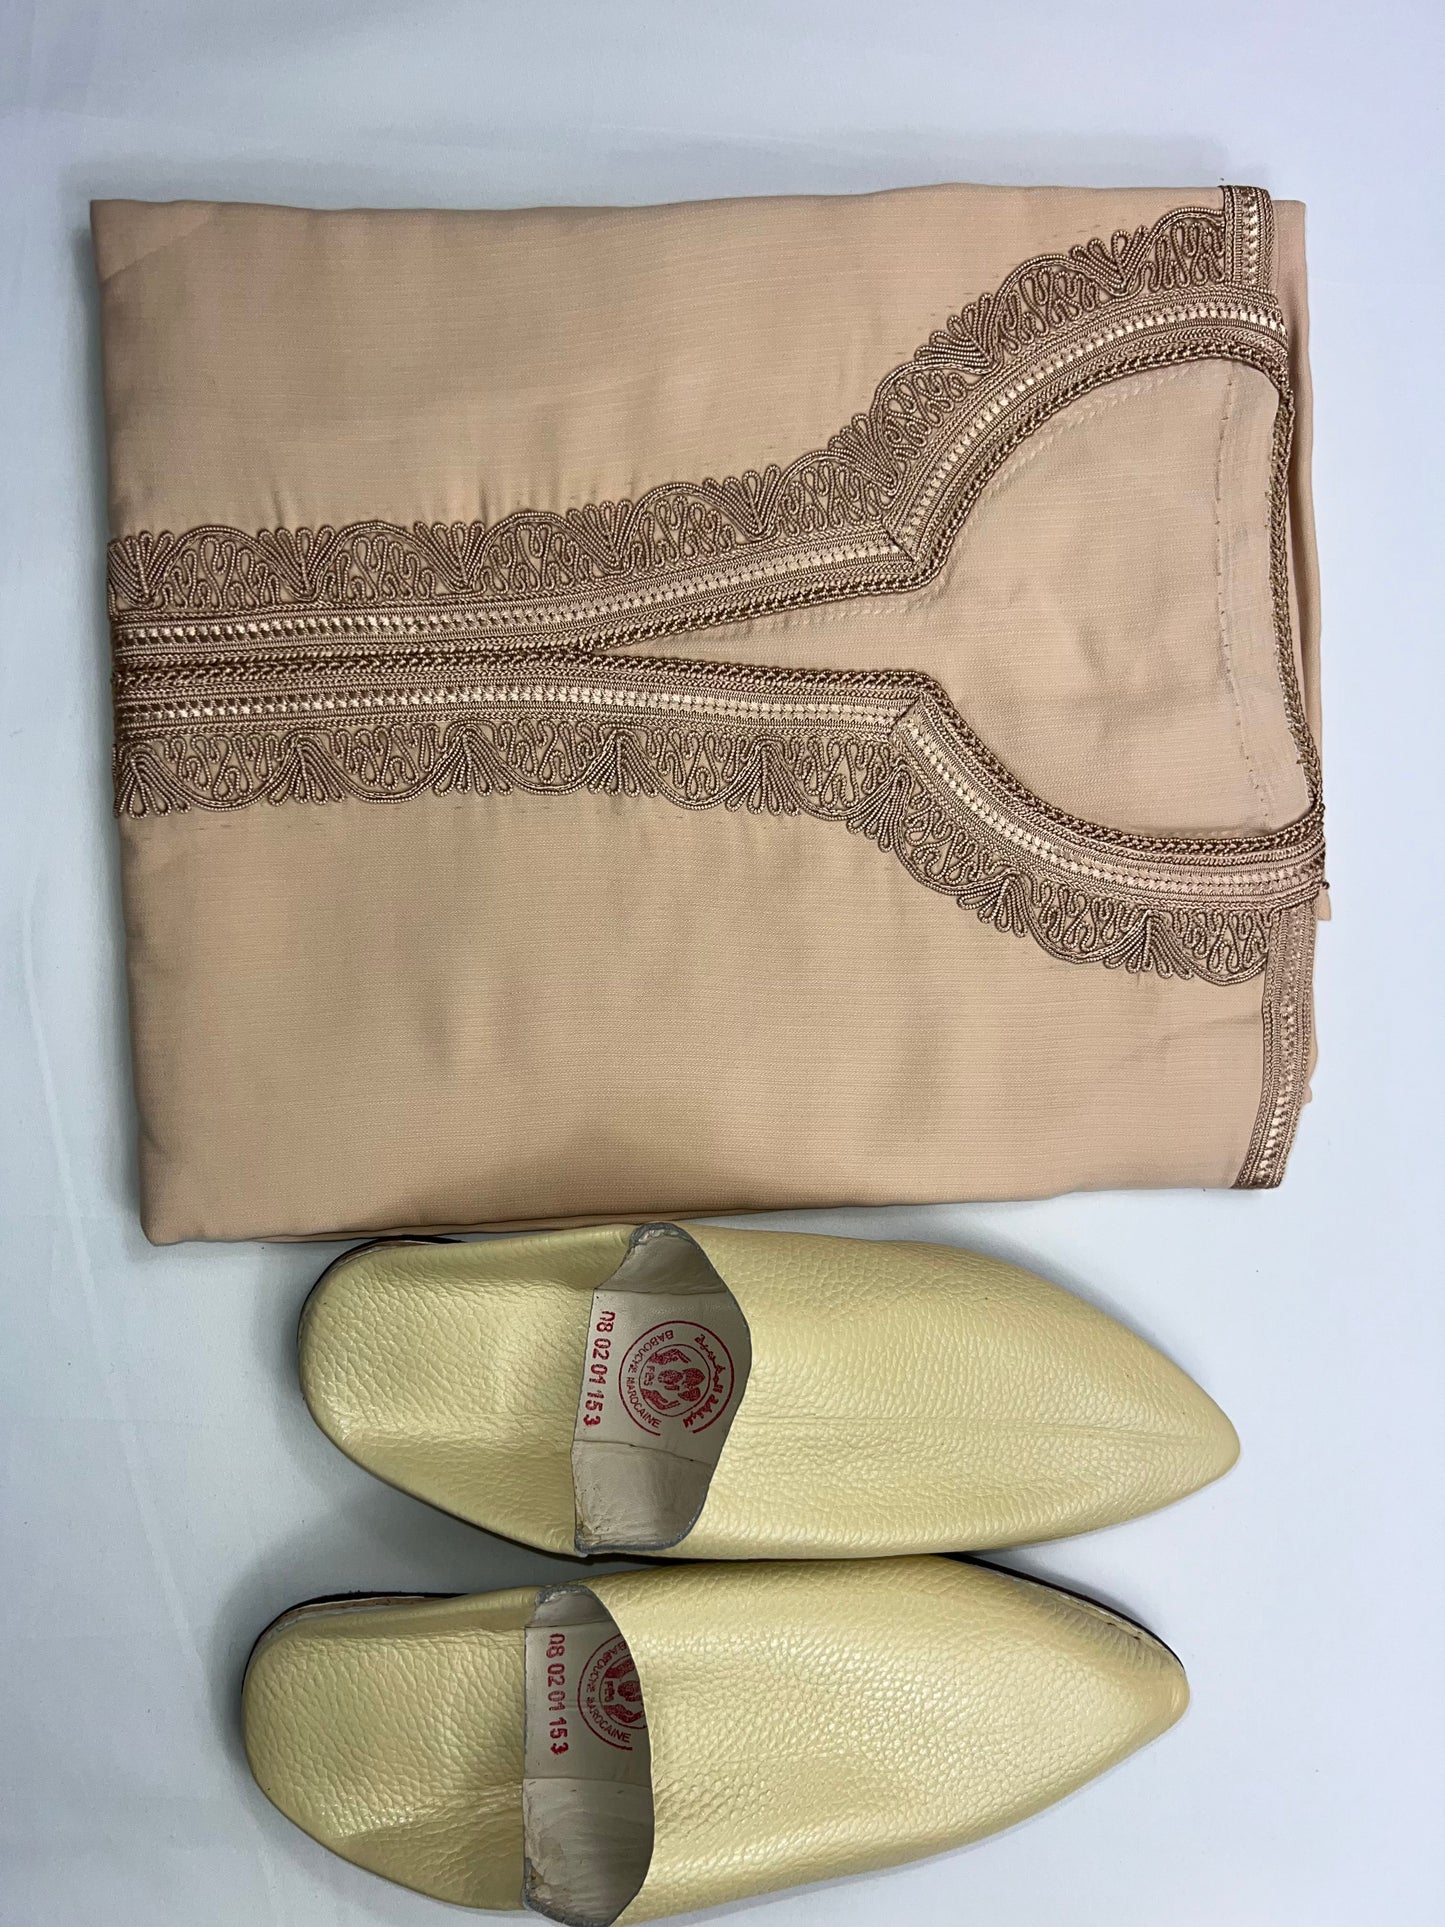 Moroccan Gandoura + Slippers for Eid gift